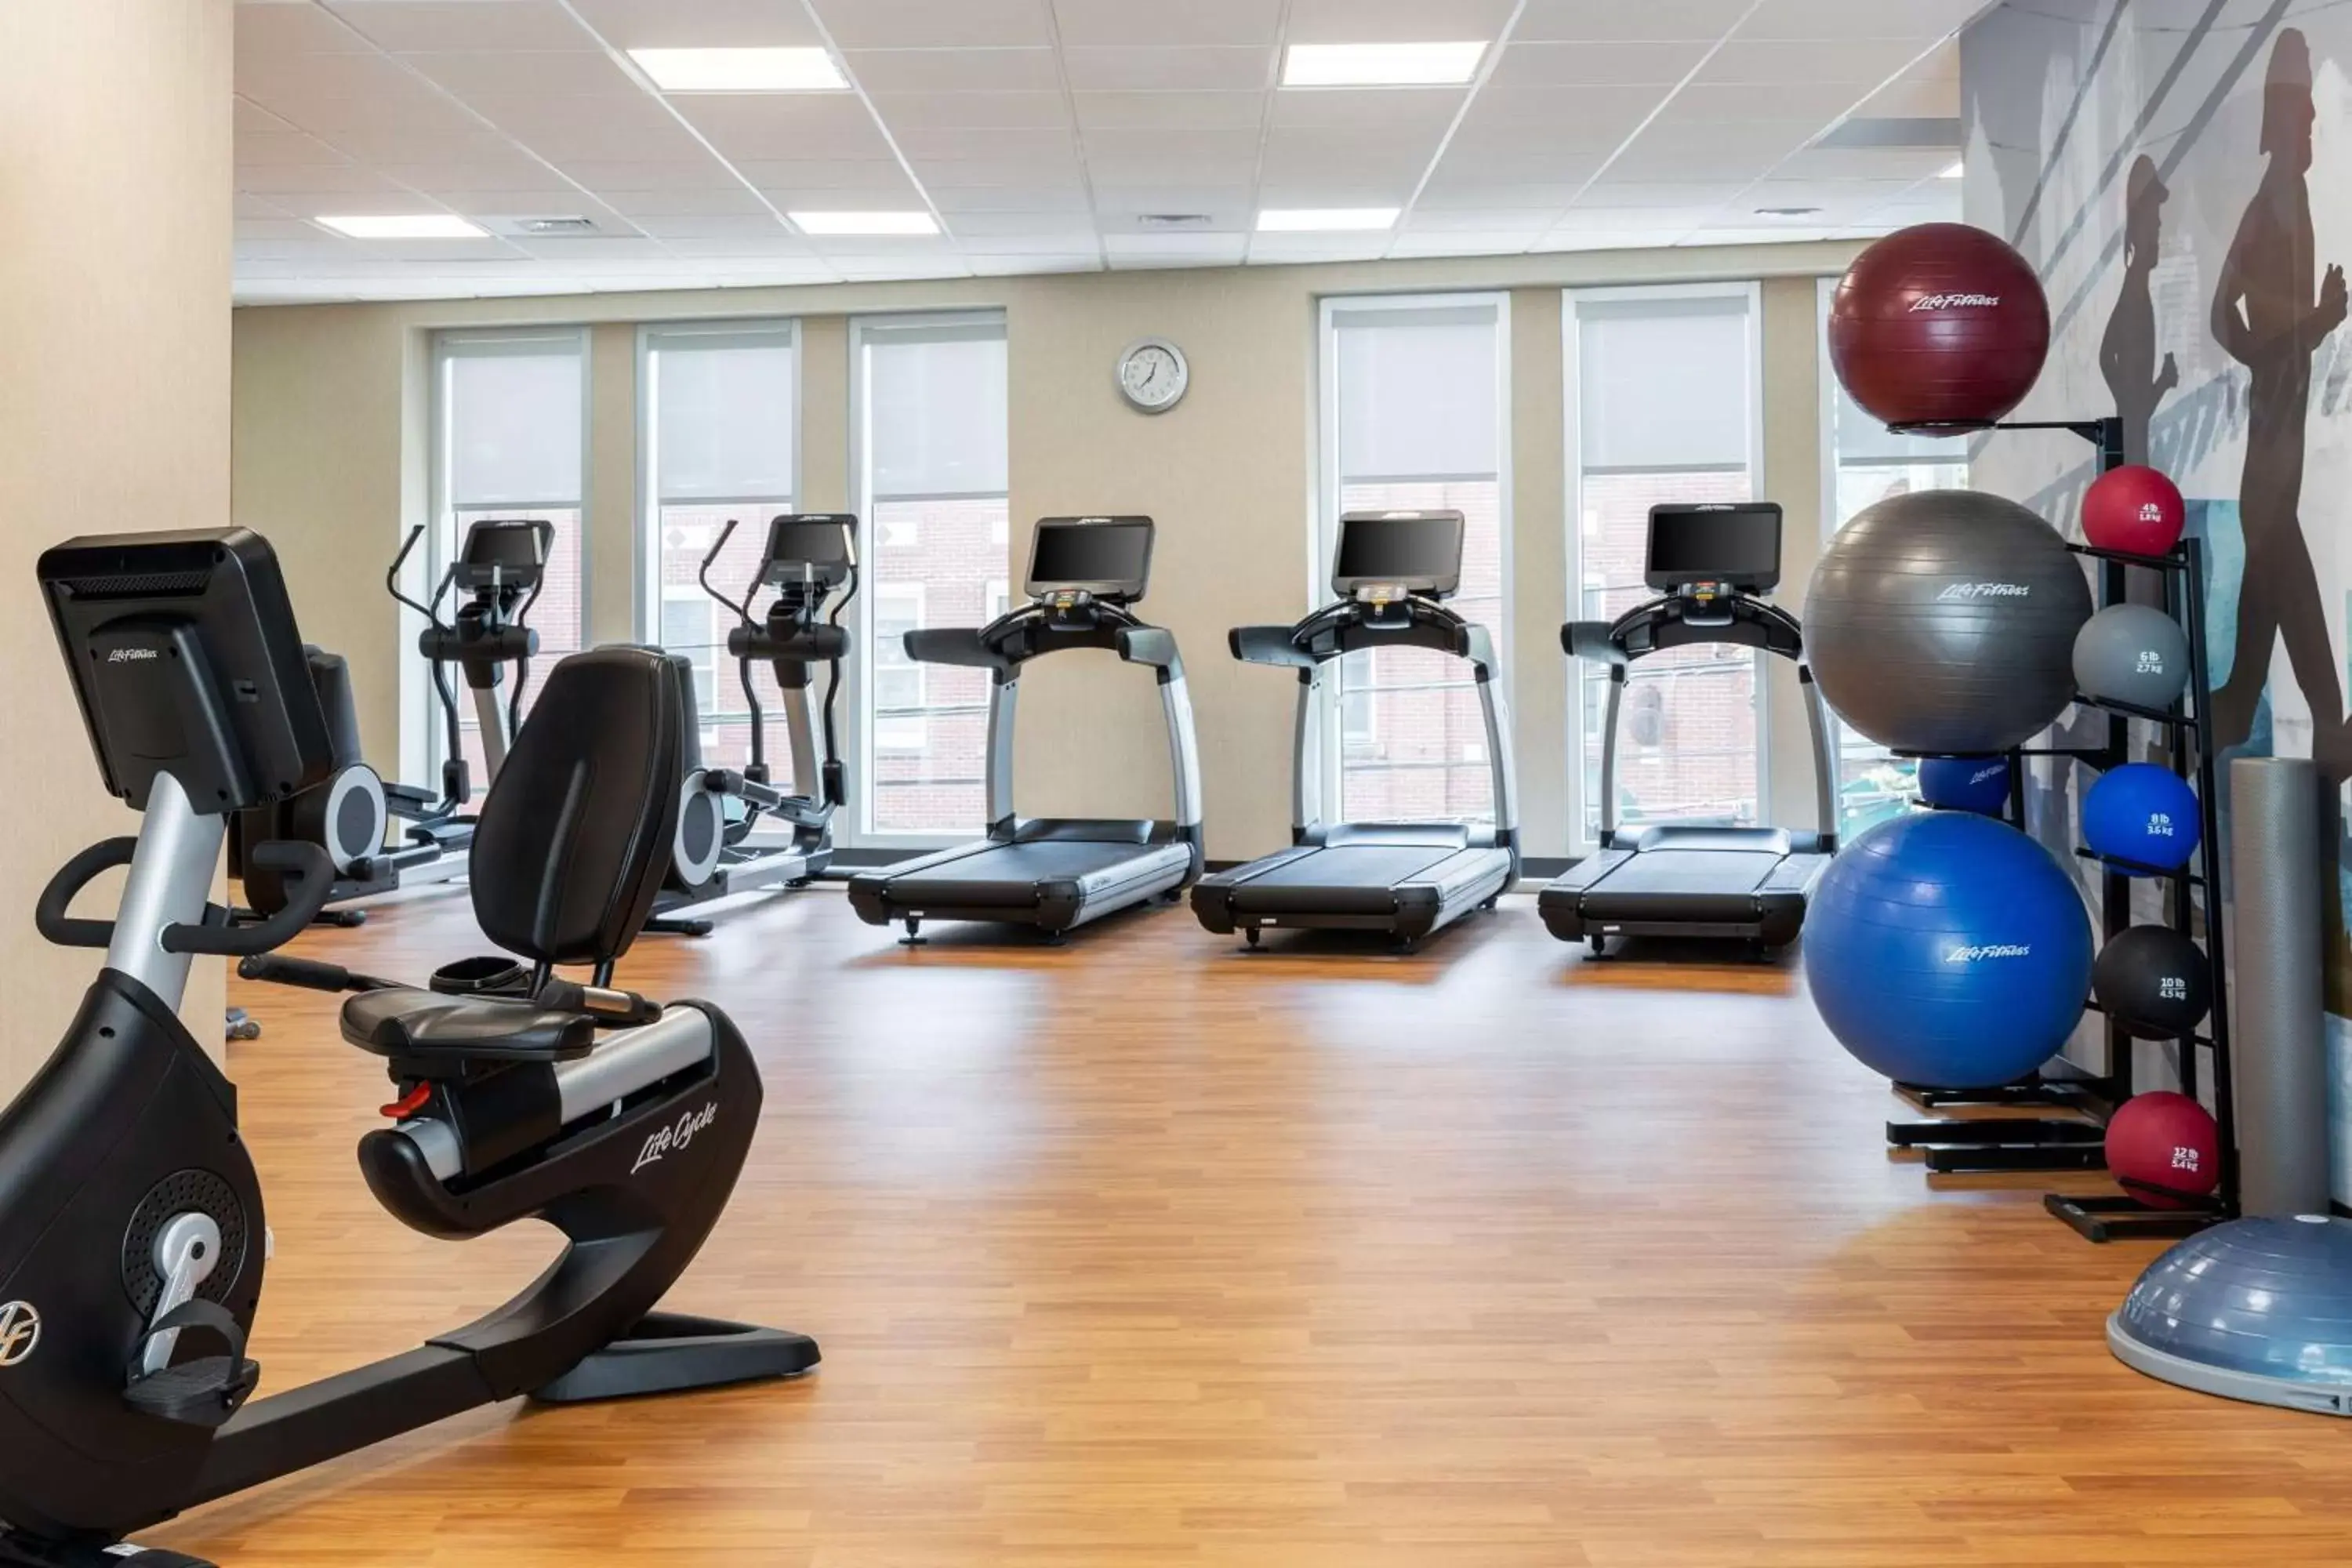 Fitness centre/facilities, Fitness Center/Facilities in Hyatt Place Atlanta Centennial Park